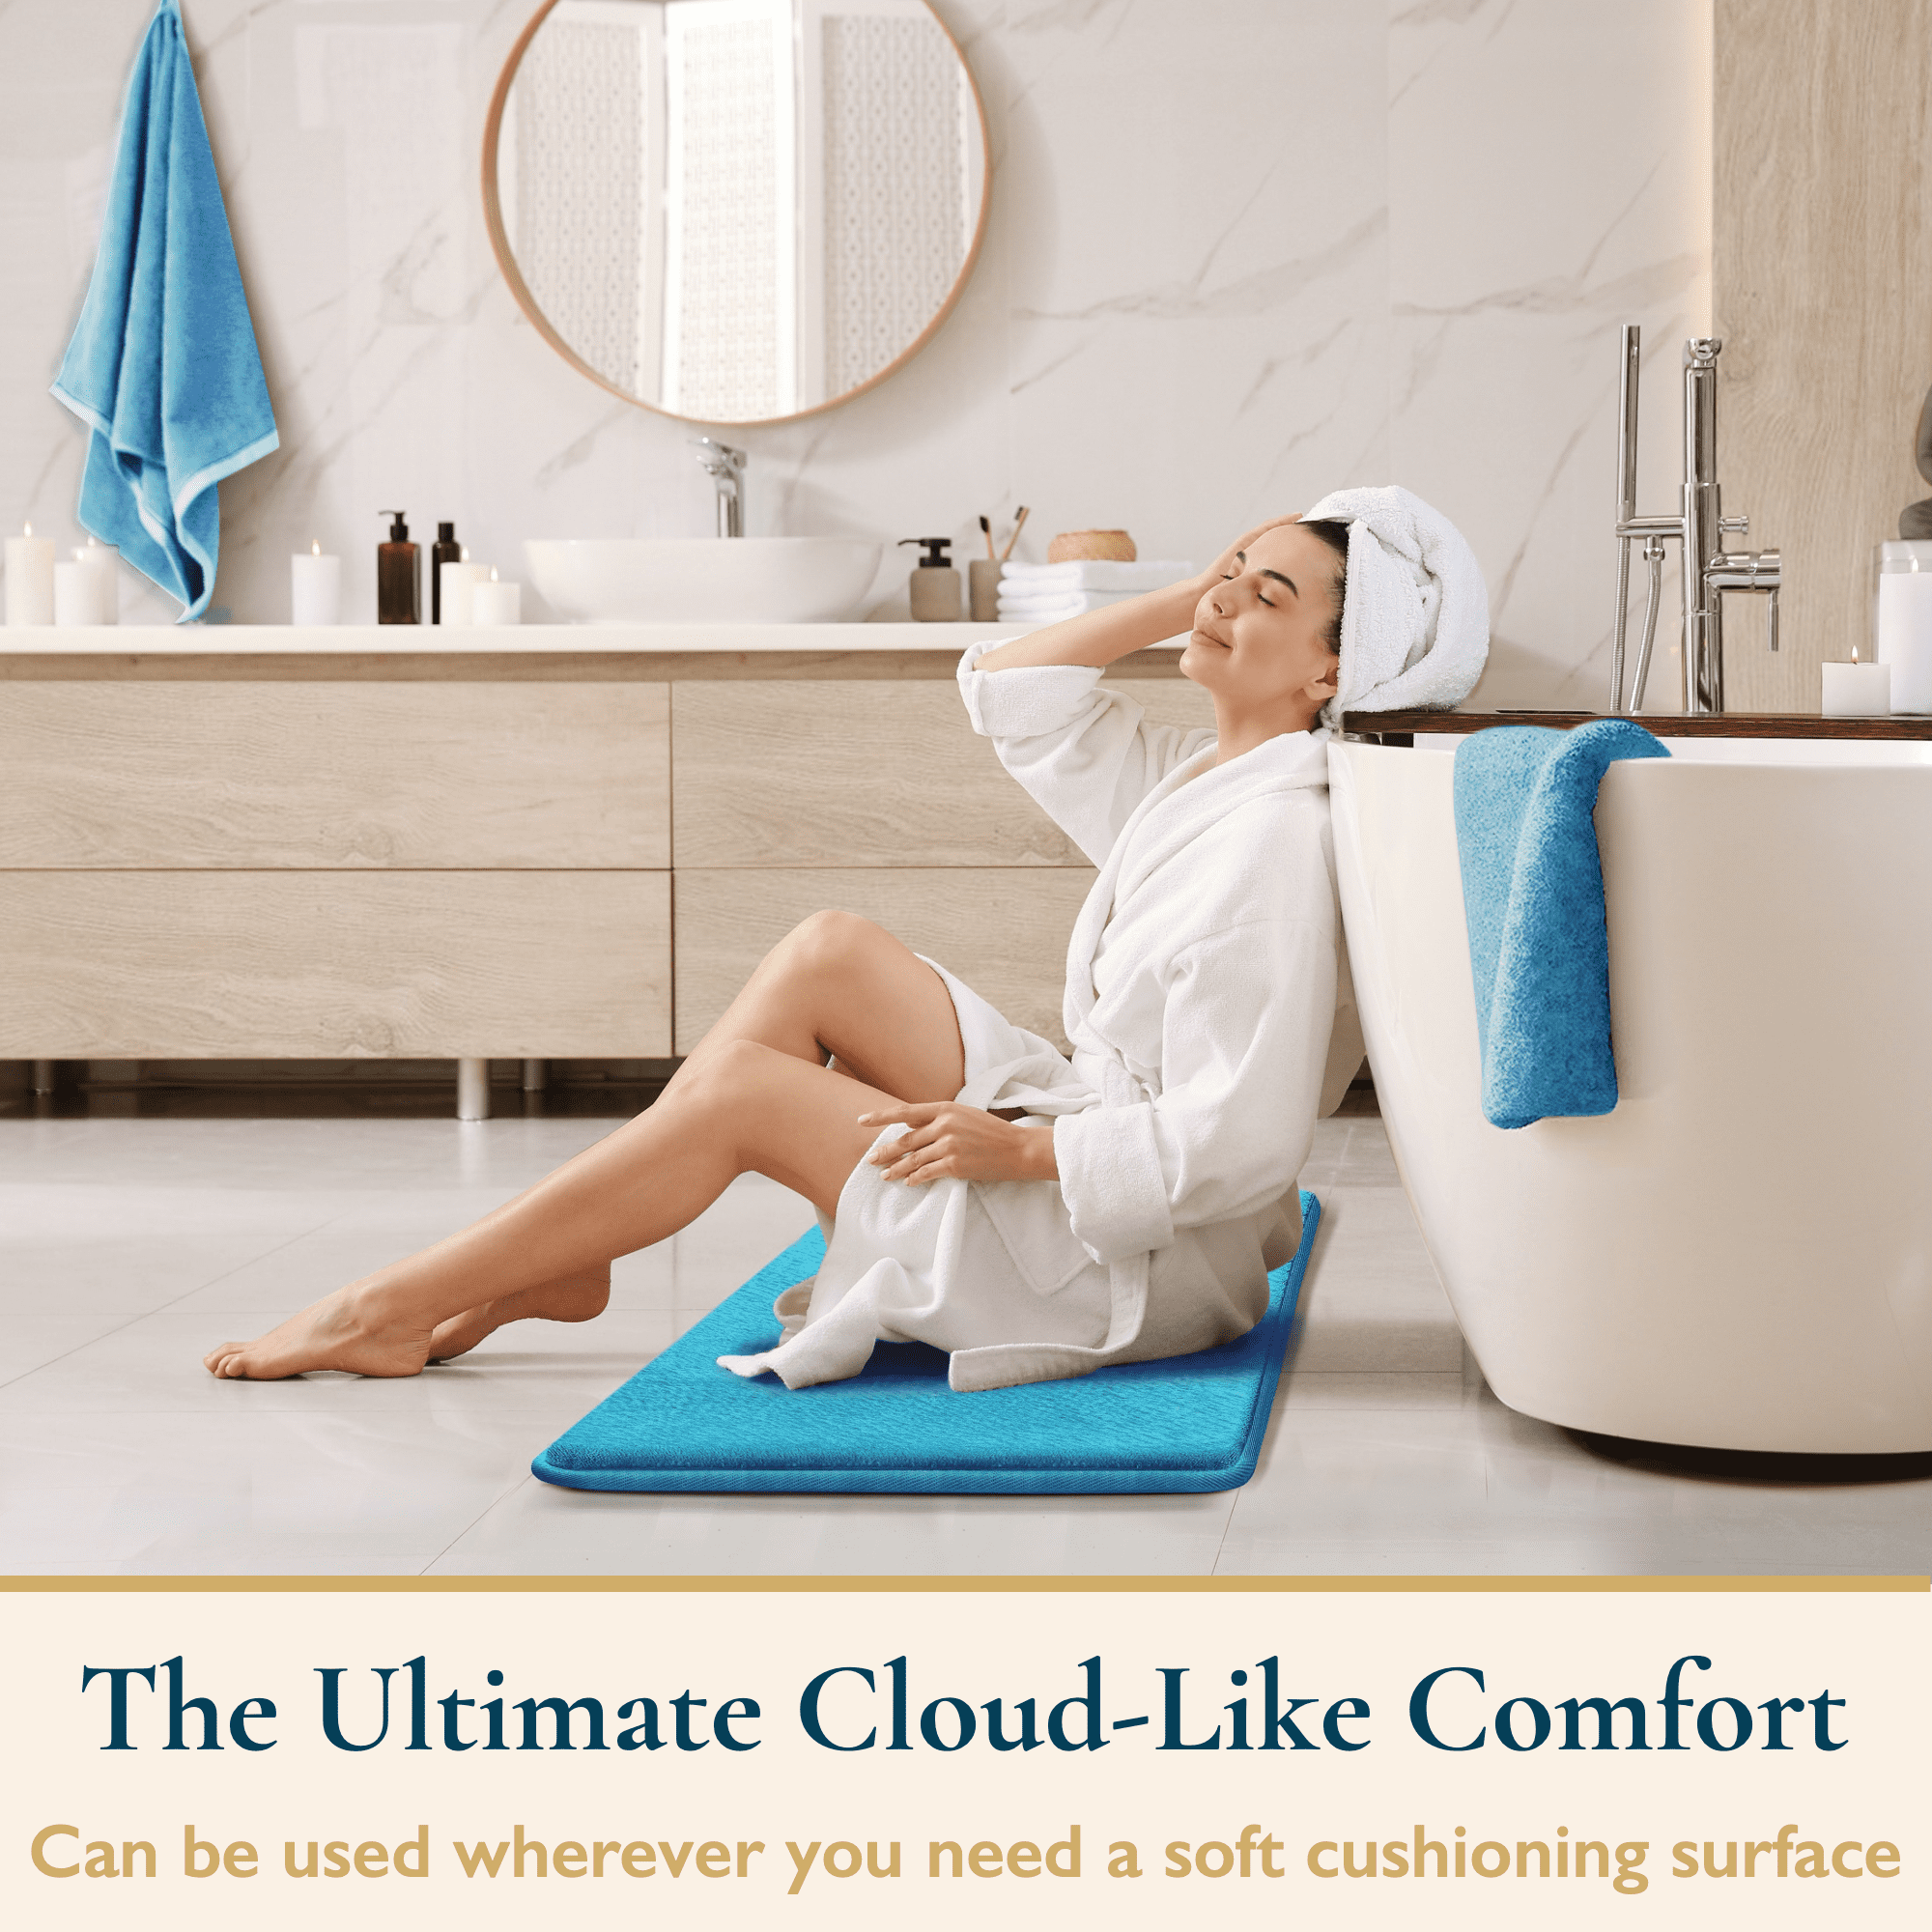 ComfiTime Bathroom Rugs – Thick Memory Foam, Non-Slip Bath Mat